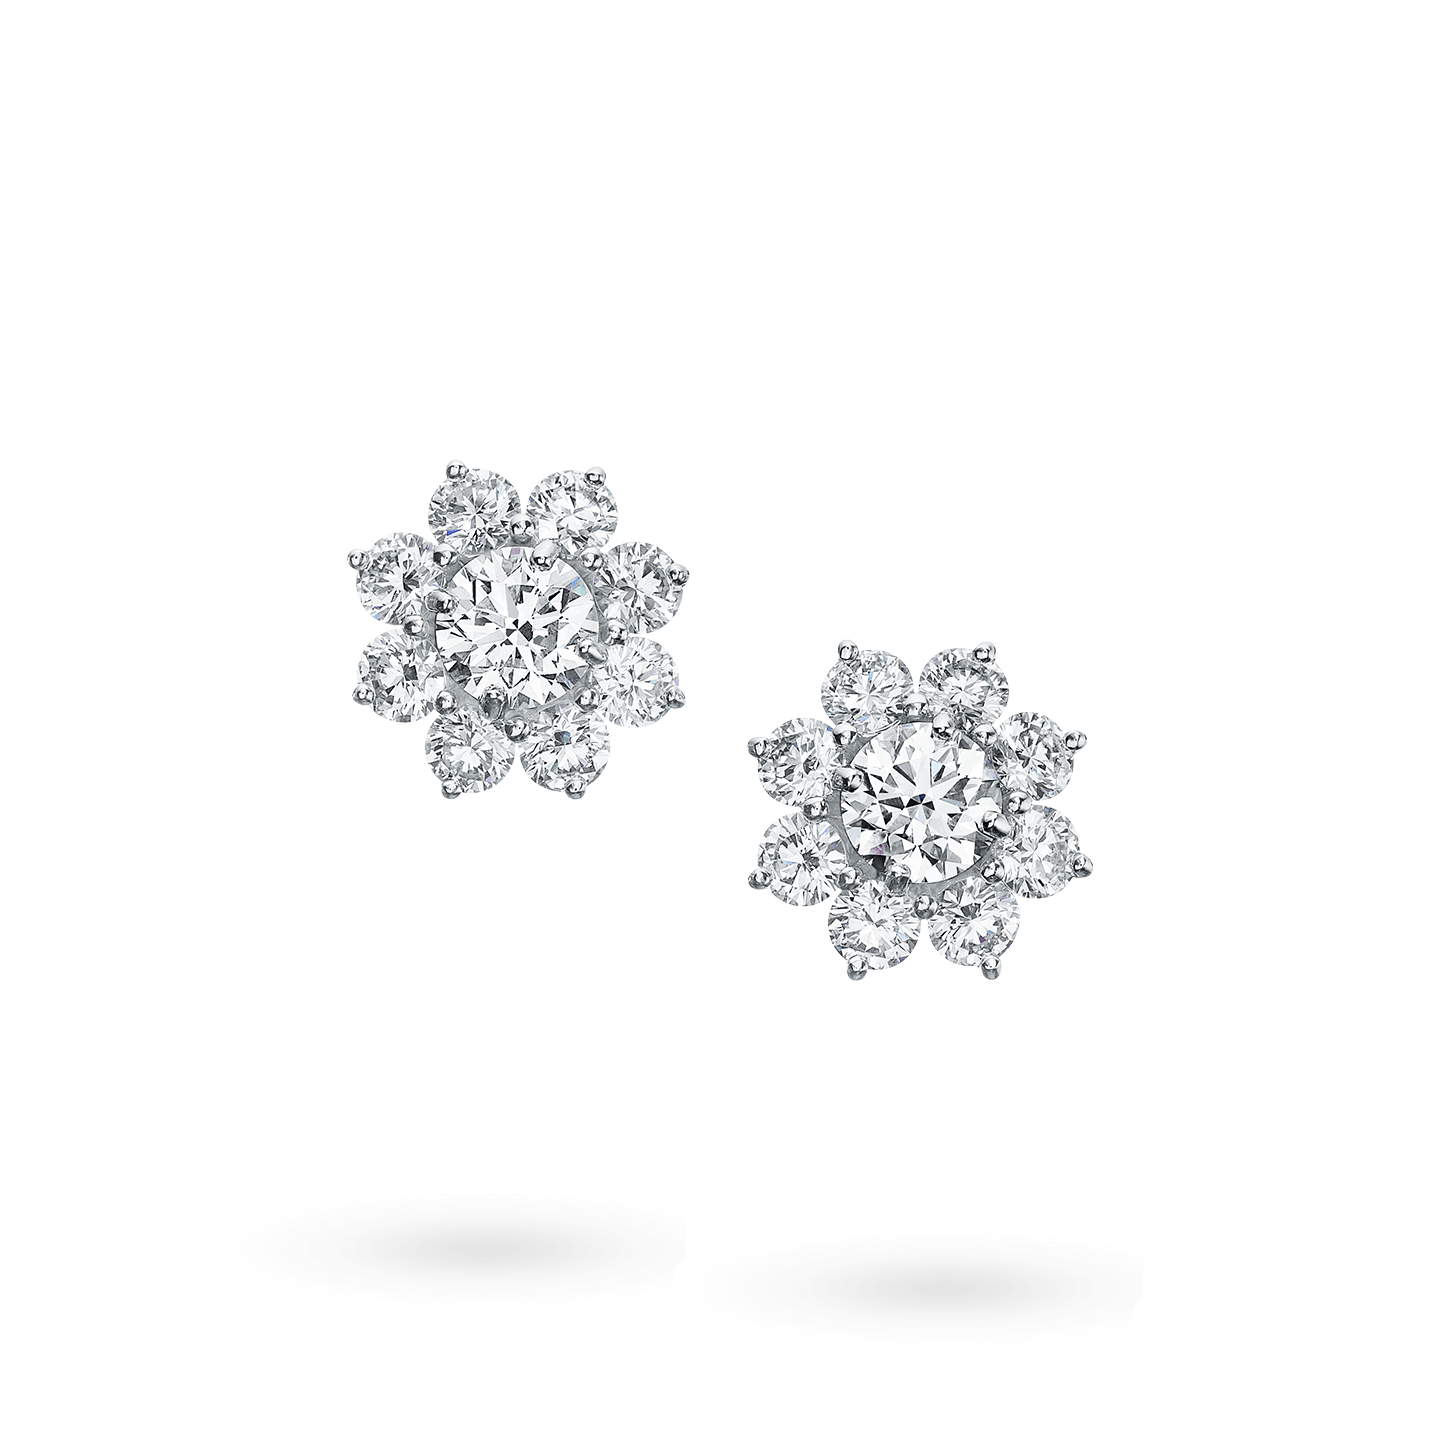 S925 Silver Sunflower Moissanite Diamond Earrings 0.5 + 0.5 Carat